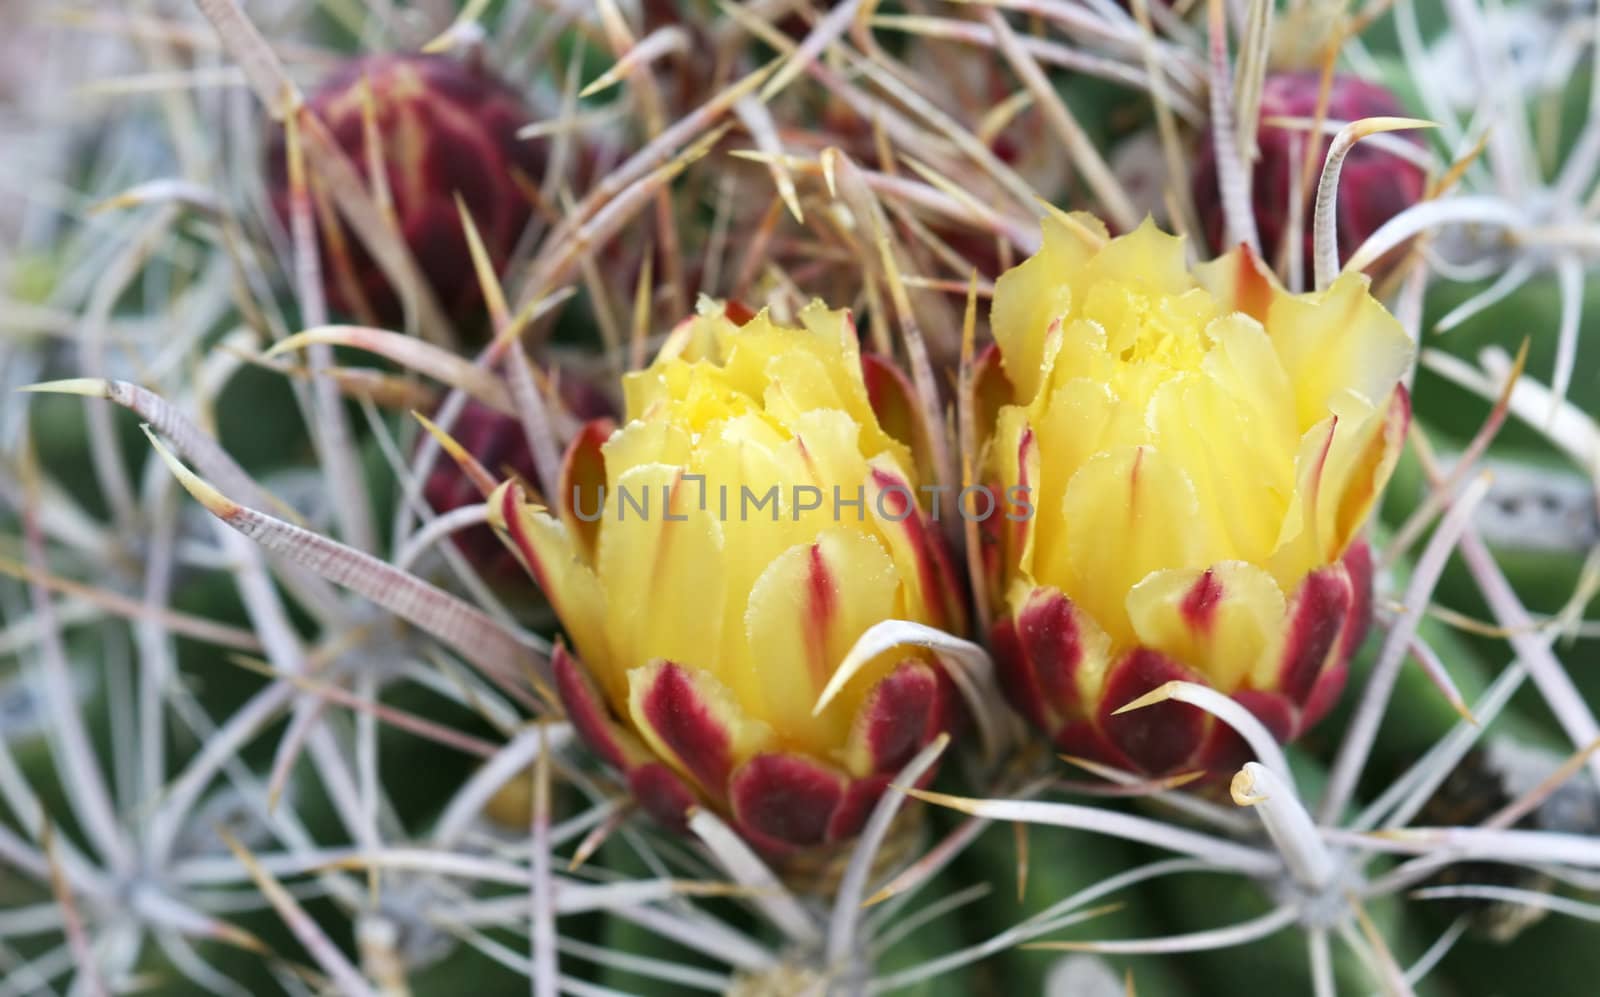 Flowering Cactus by deserttrends